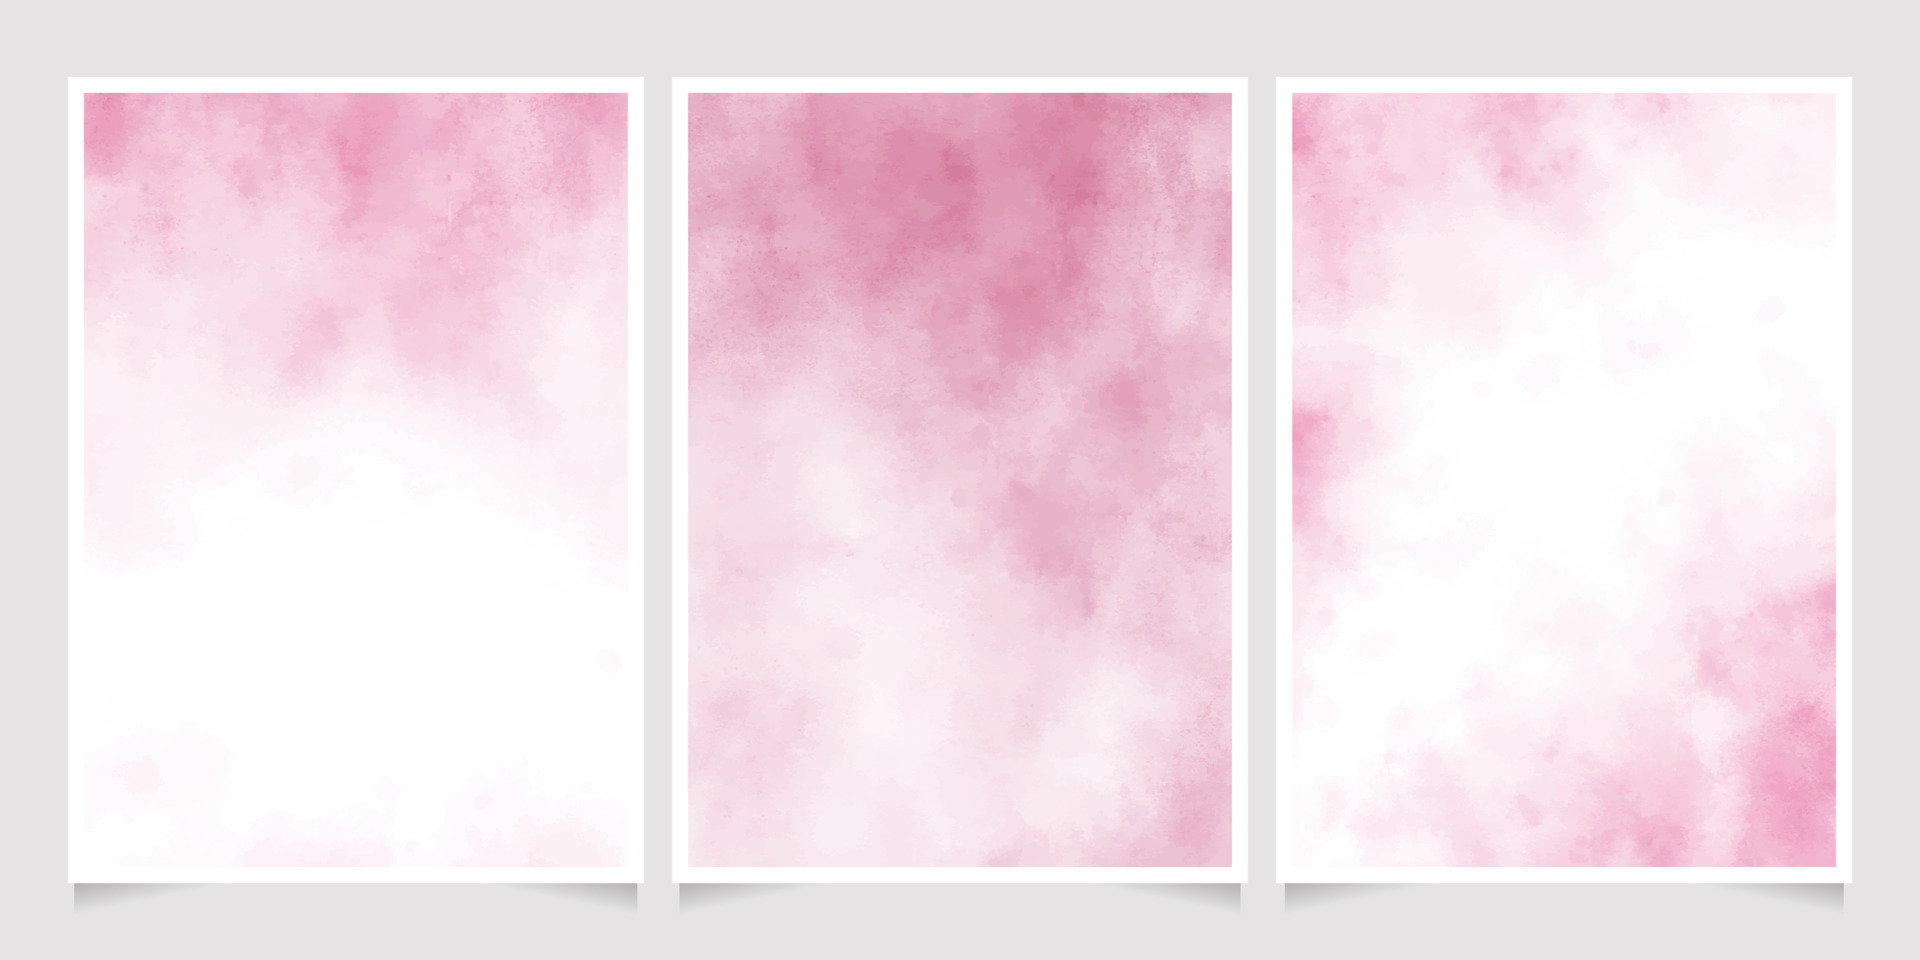 Màu sắc nước sơn hồng ướt luôn tạo ra một vẻ đẹp đầy cảm xúc. Nhiều người ưa thích màu sắc này vì sự độc đáo và tinh tế của nó. Với những hình ảnh nước sơn hồng ướt, bạn sẽ có cơ hội để khám phá một màu sắc vô cùng đặc biệt và ấn tượng.